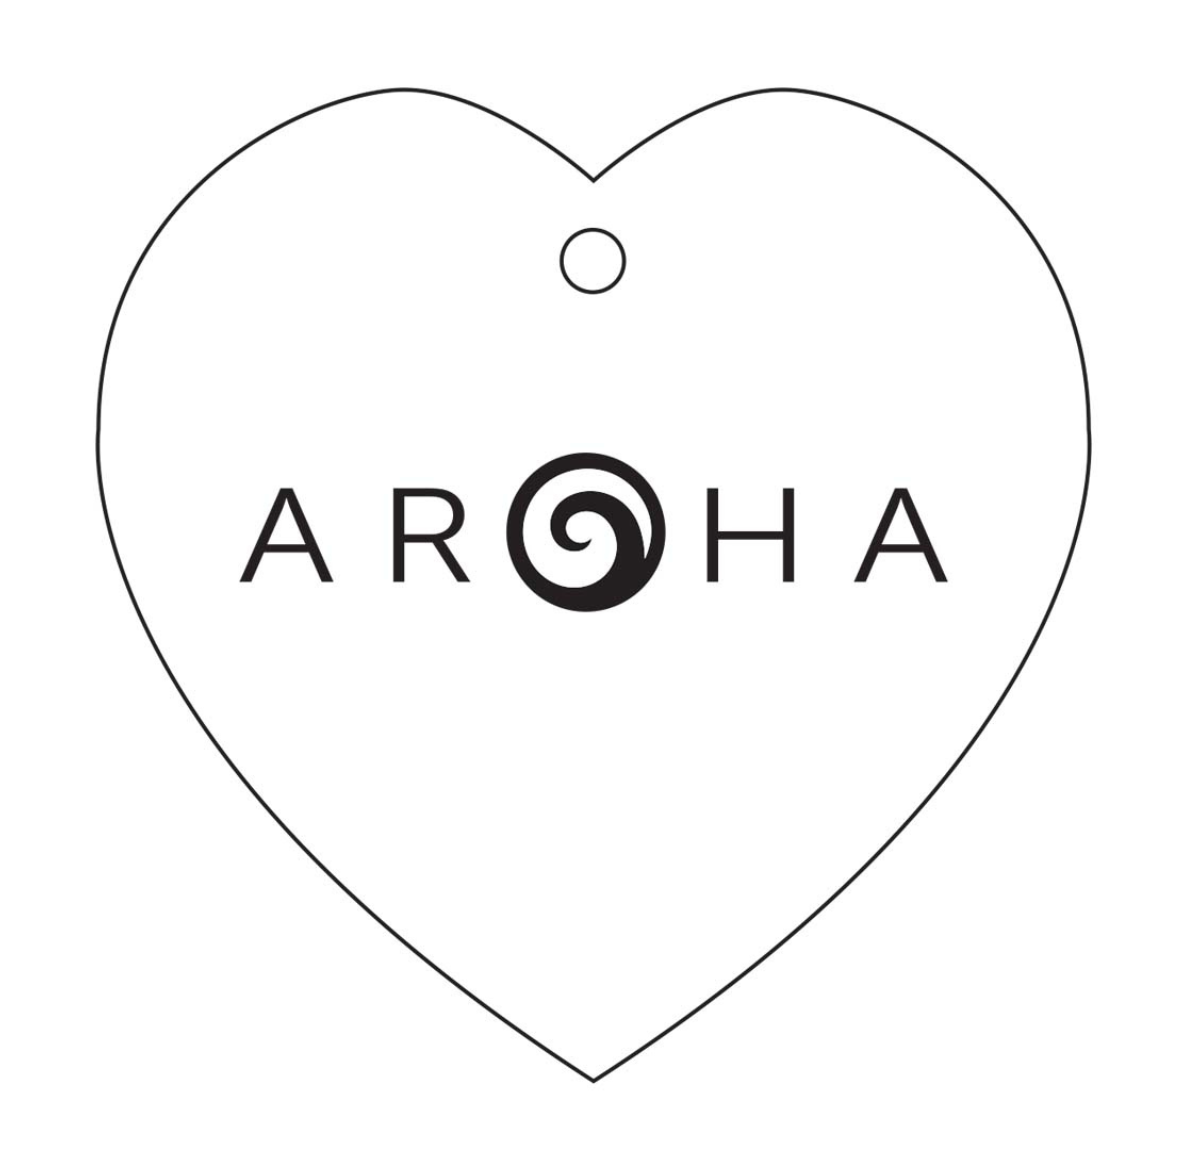 Aroha Heart Ceramic Wall Hanging - White/Black